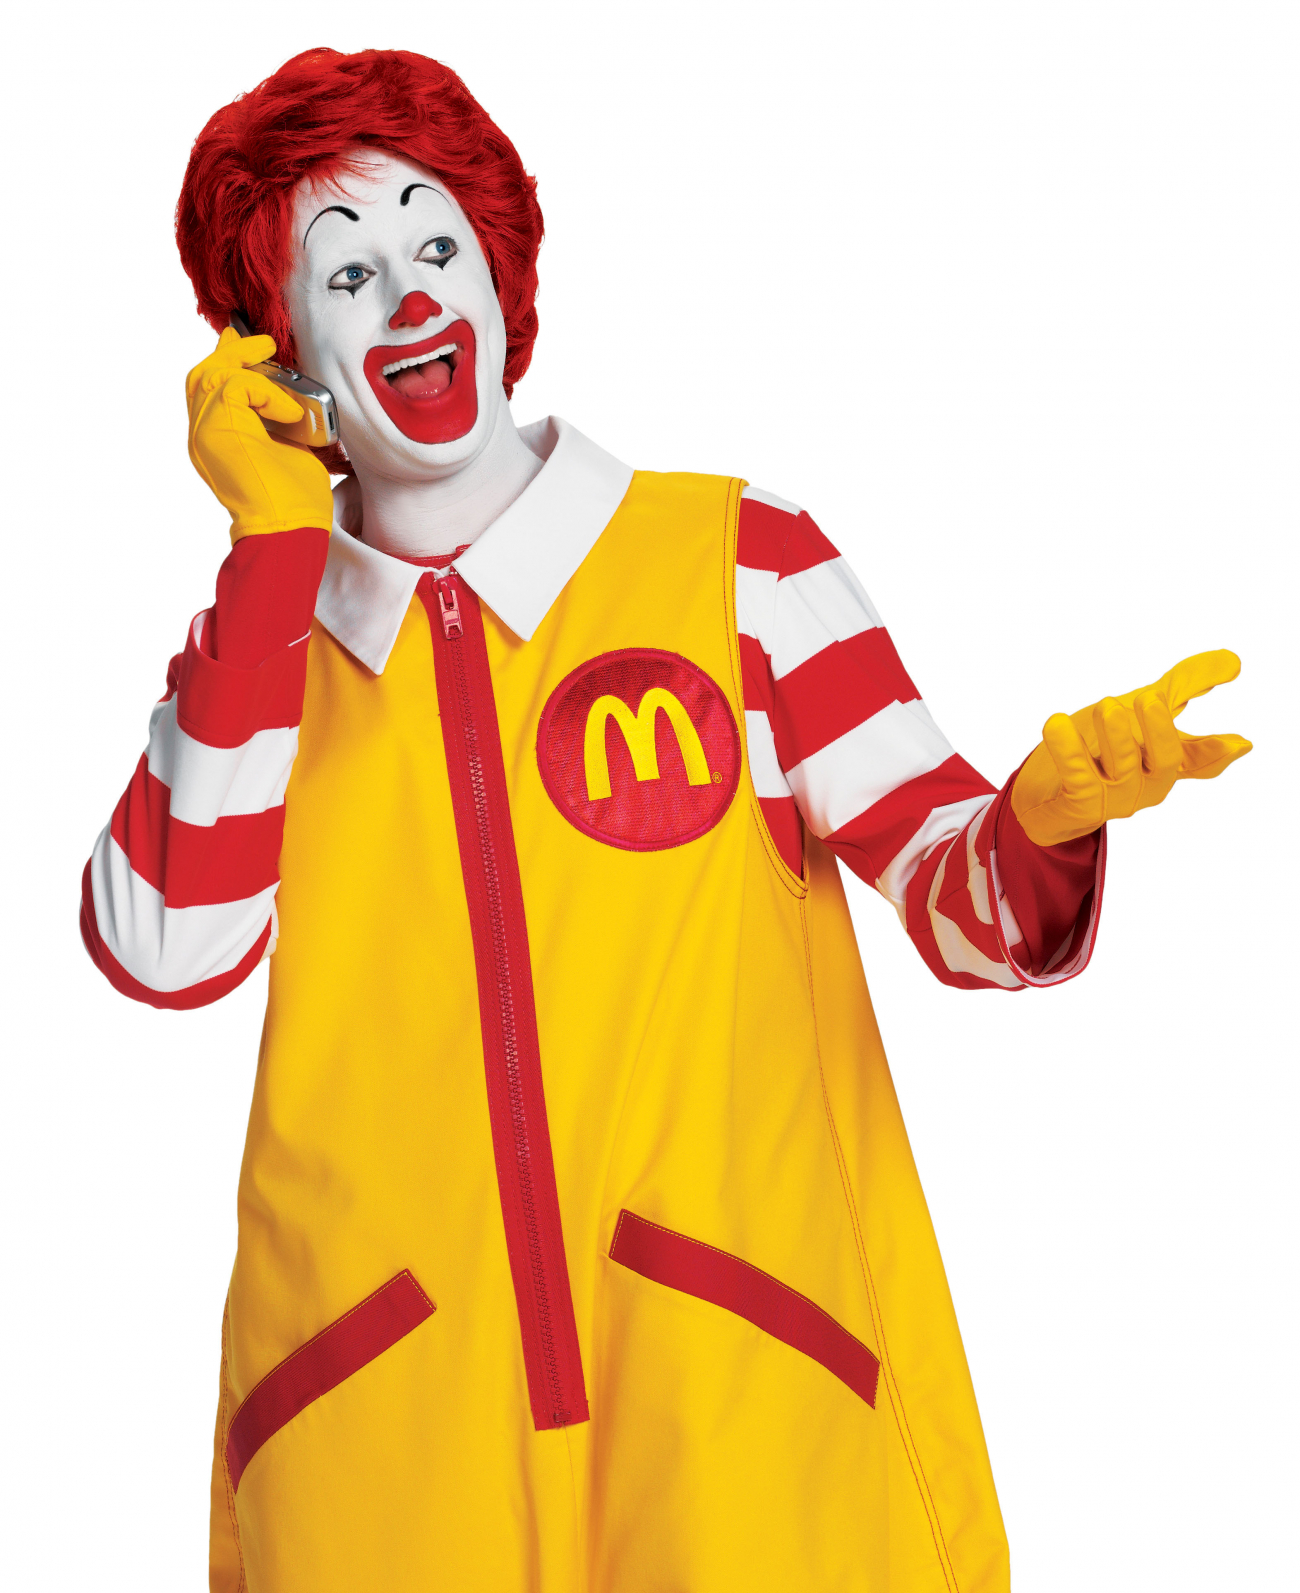 Slavný klaun Ronald McDonald se v Japonsku jmenuje Donald. Japonci totiž jeho pravé jméno neumí pořádně vyslovit.